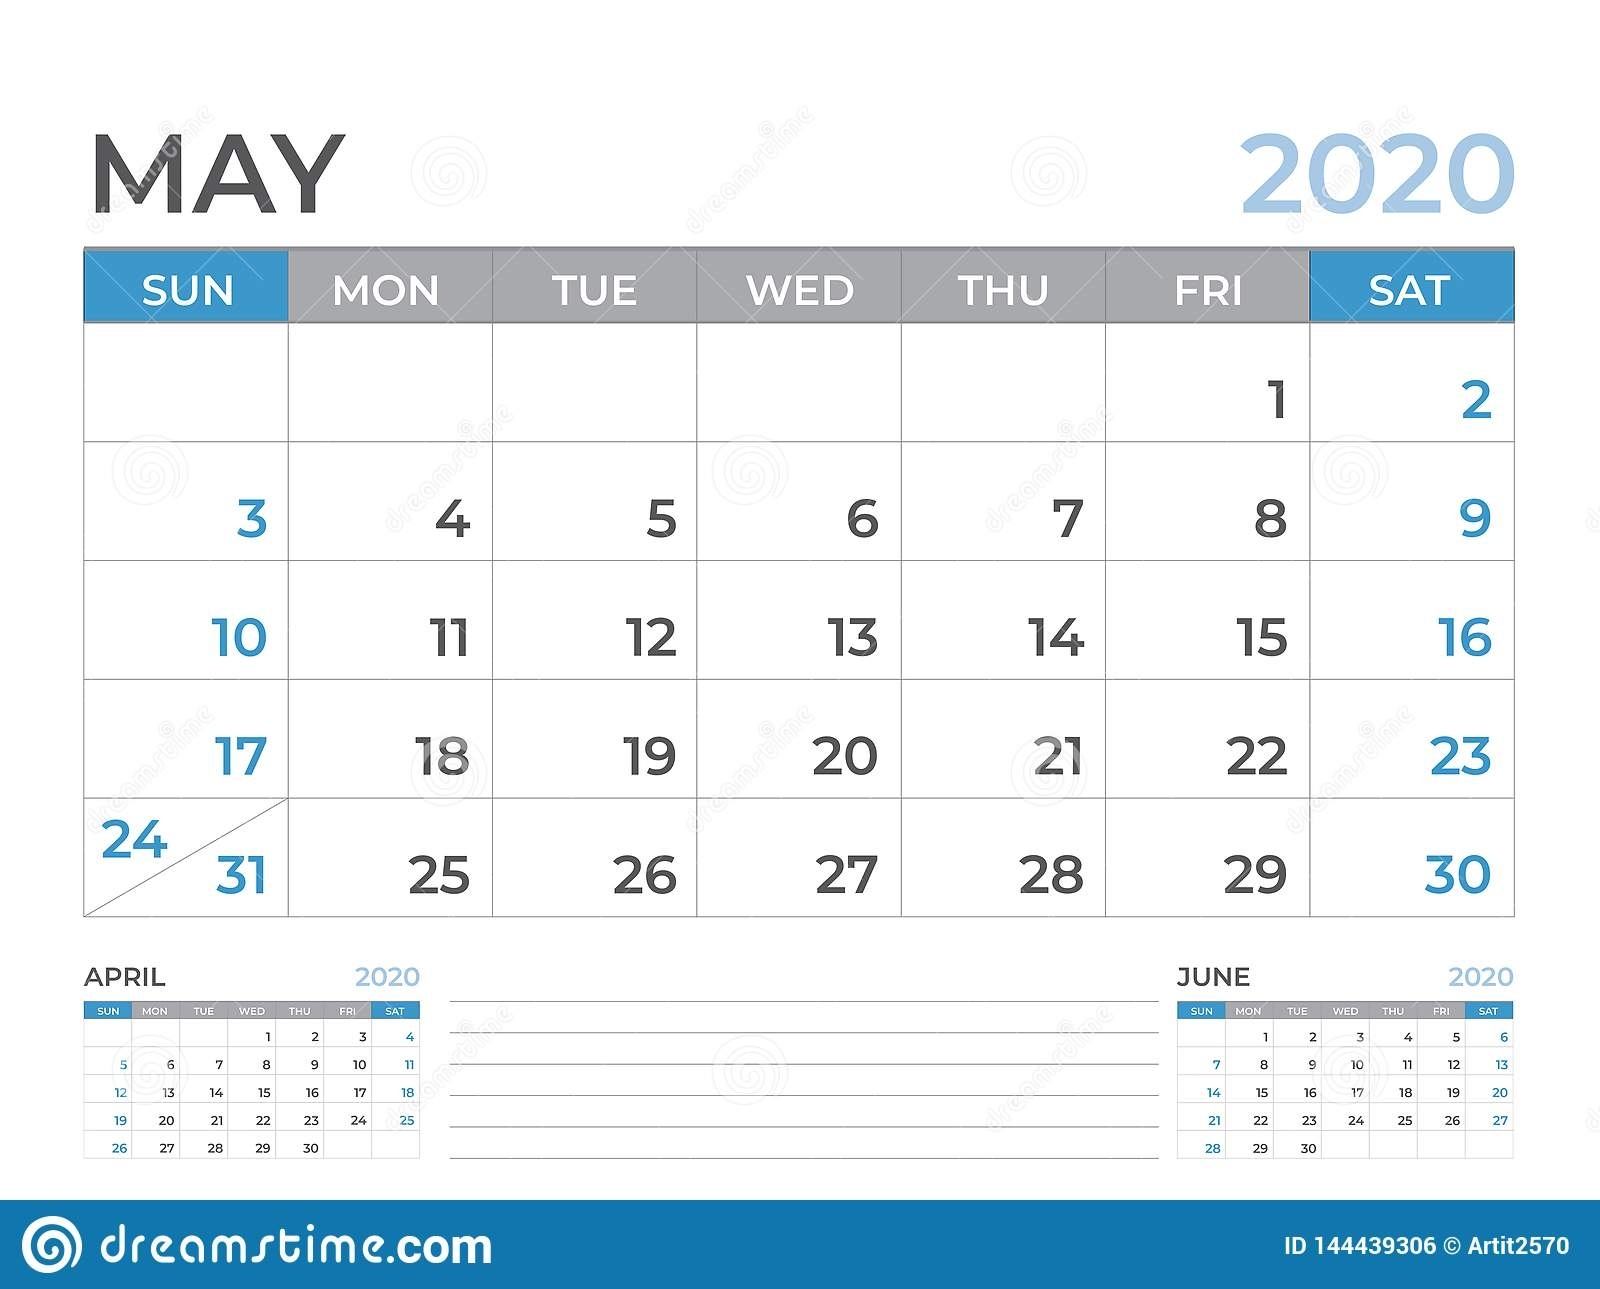 May 2020 Calendar Template, Desk Calendar Layout Size 8 X 6 6 X 9 Calendar Template